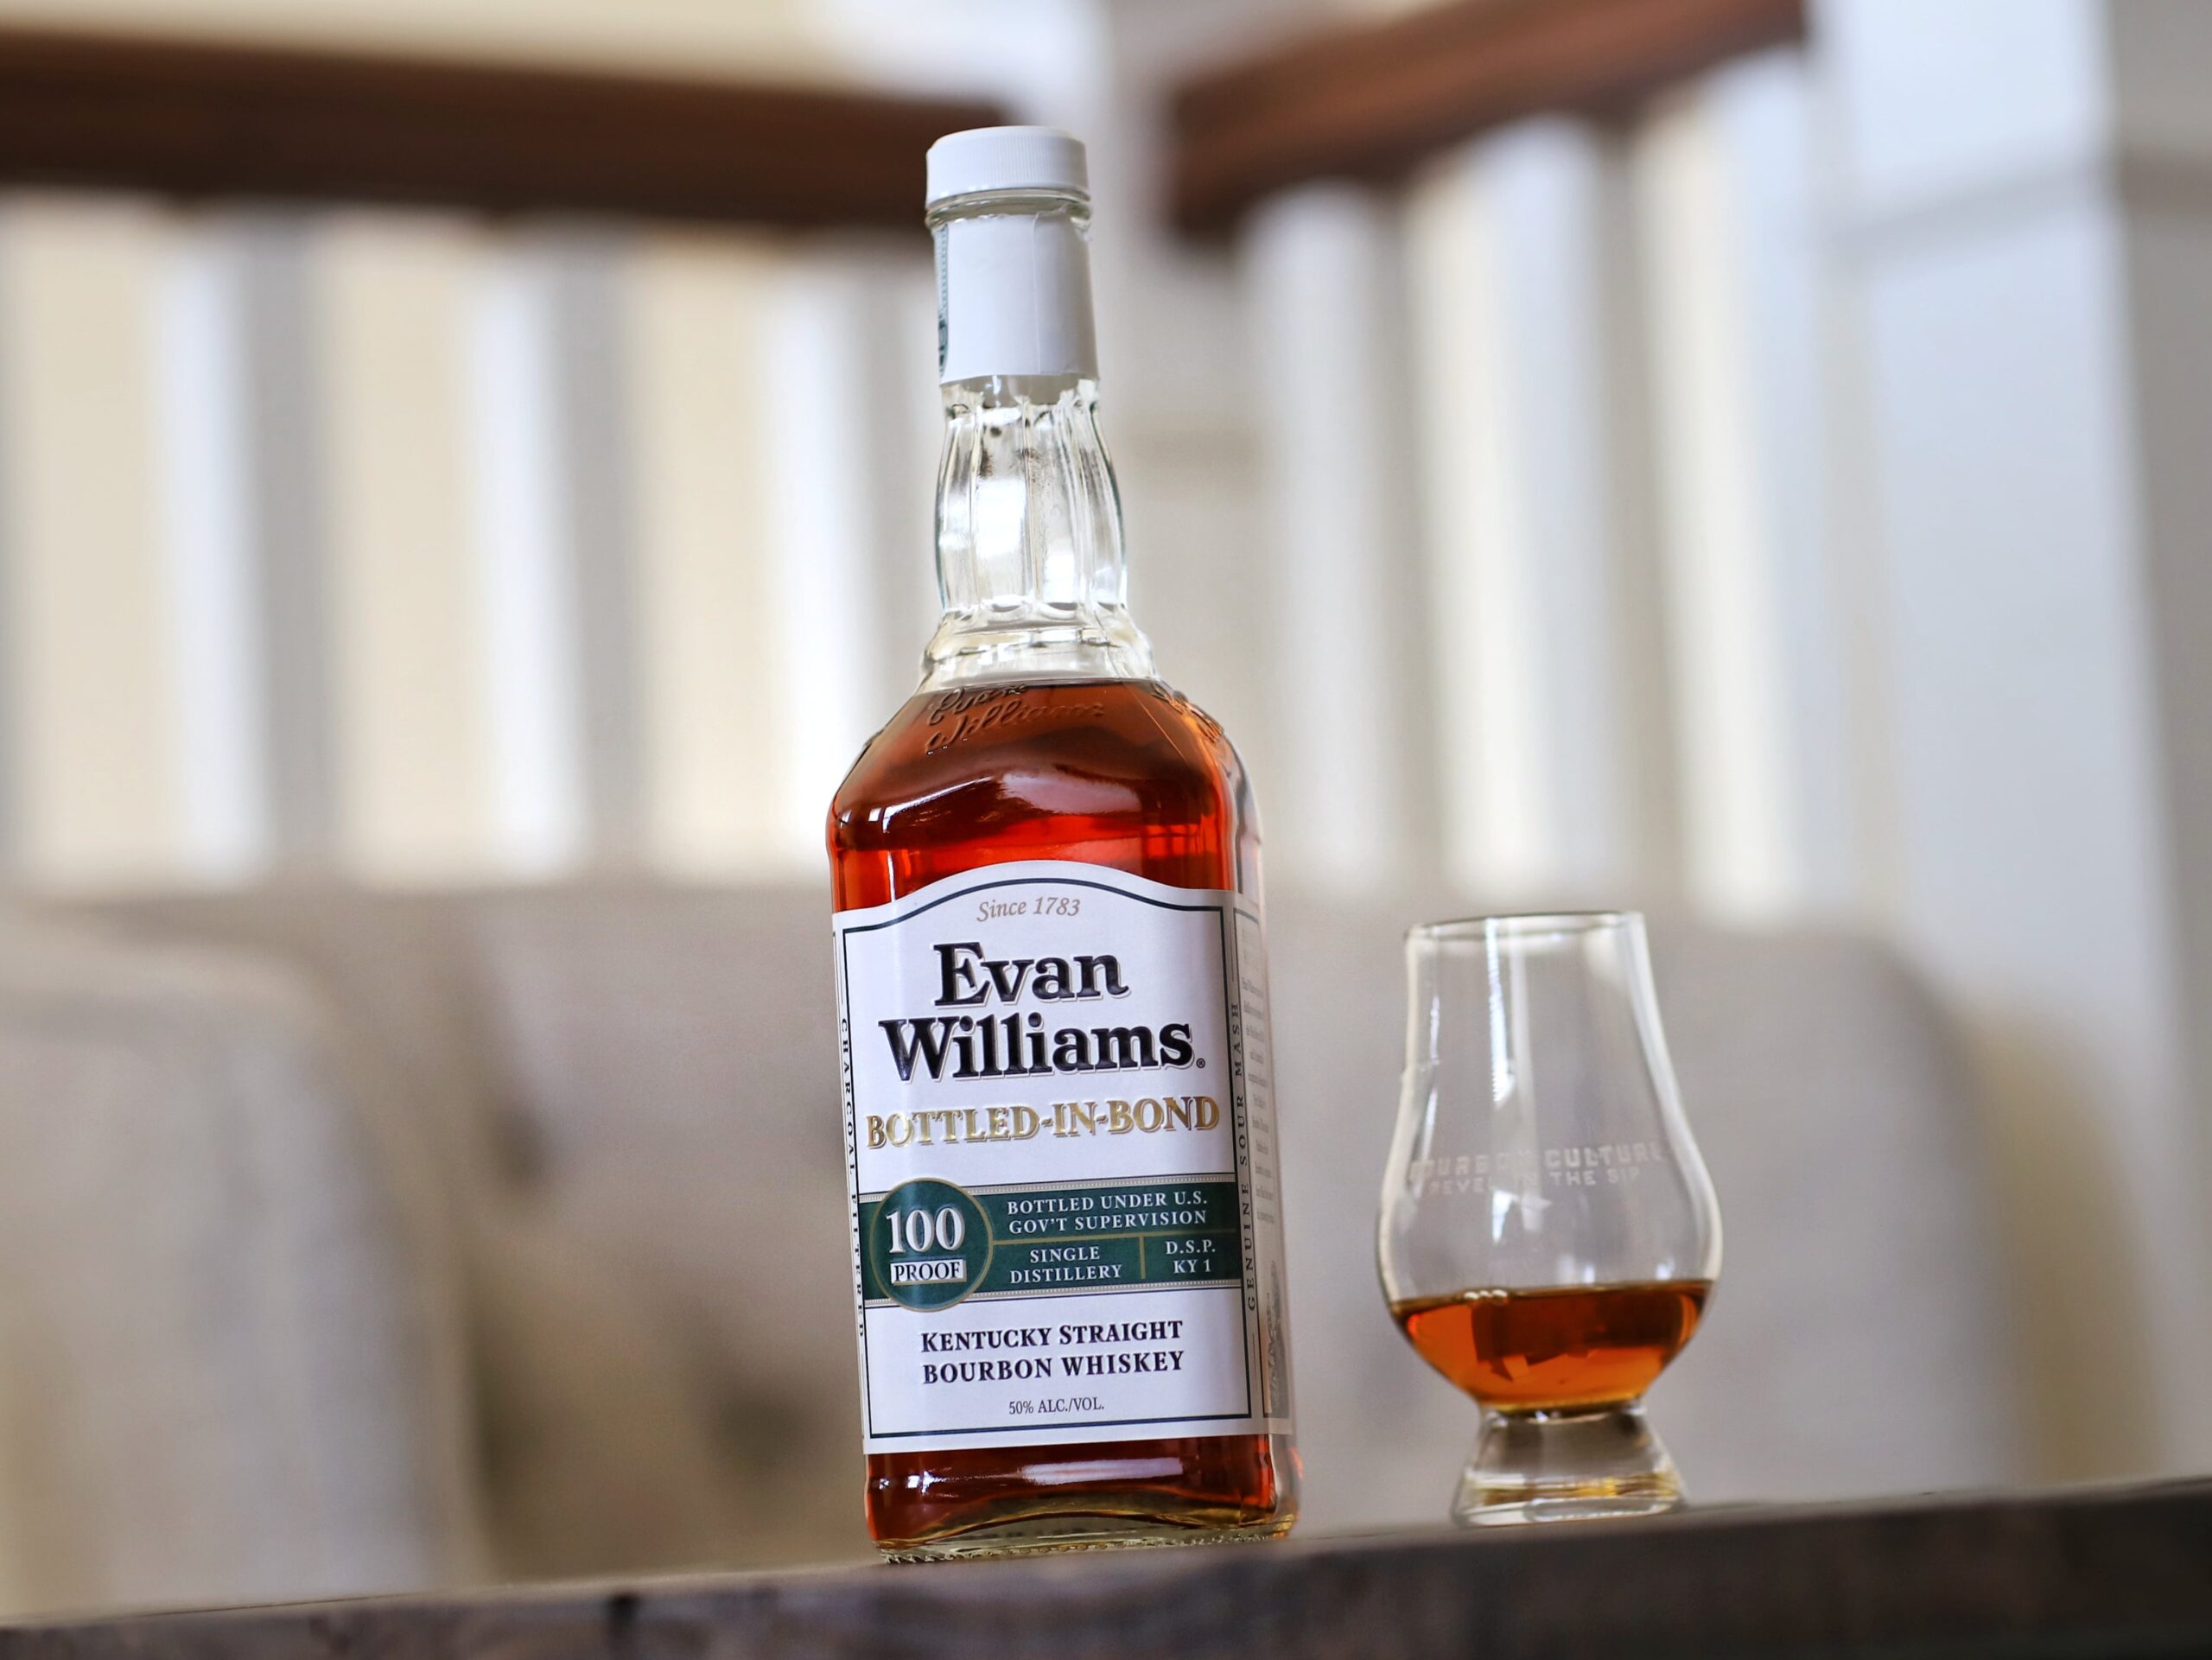 Evan Williams Bottled in Bond Bourbon Review